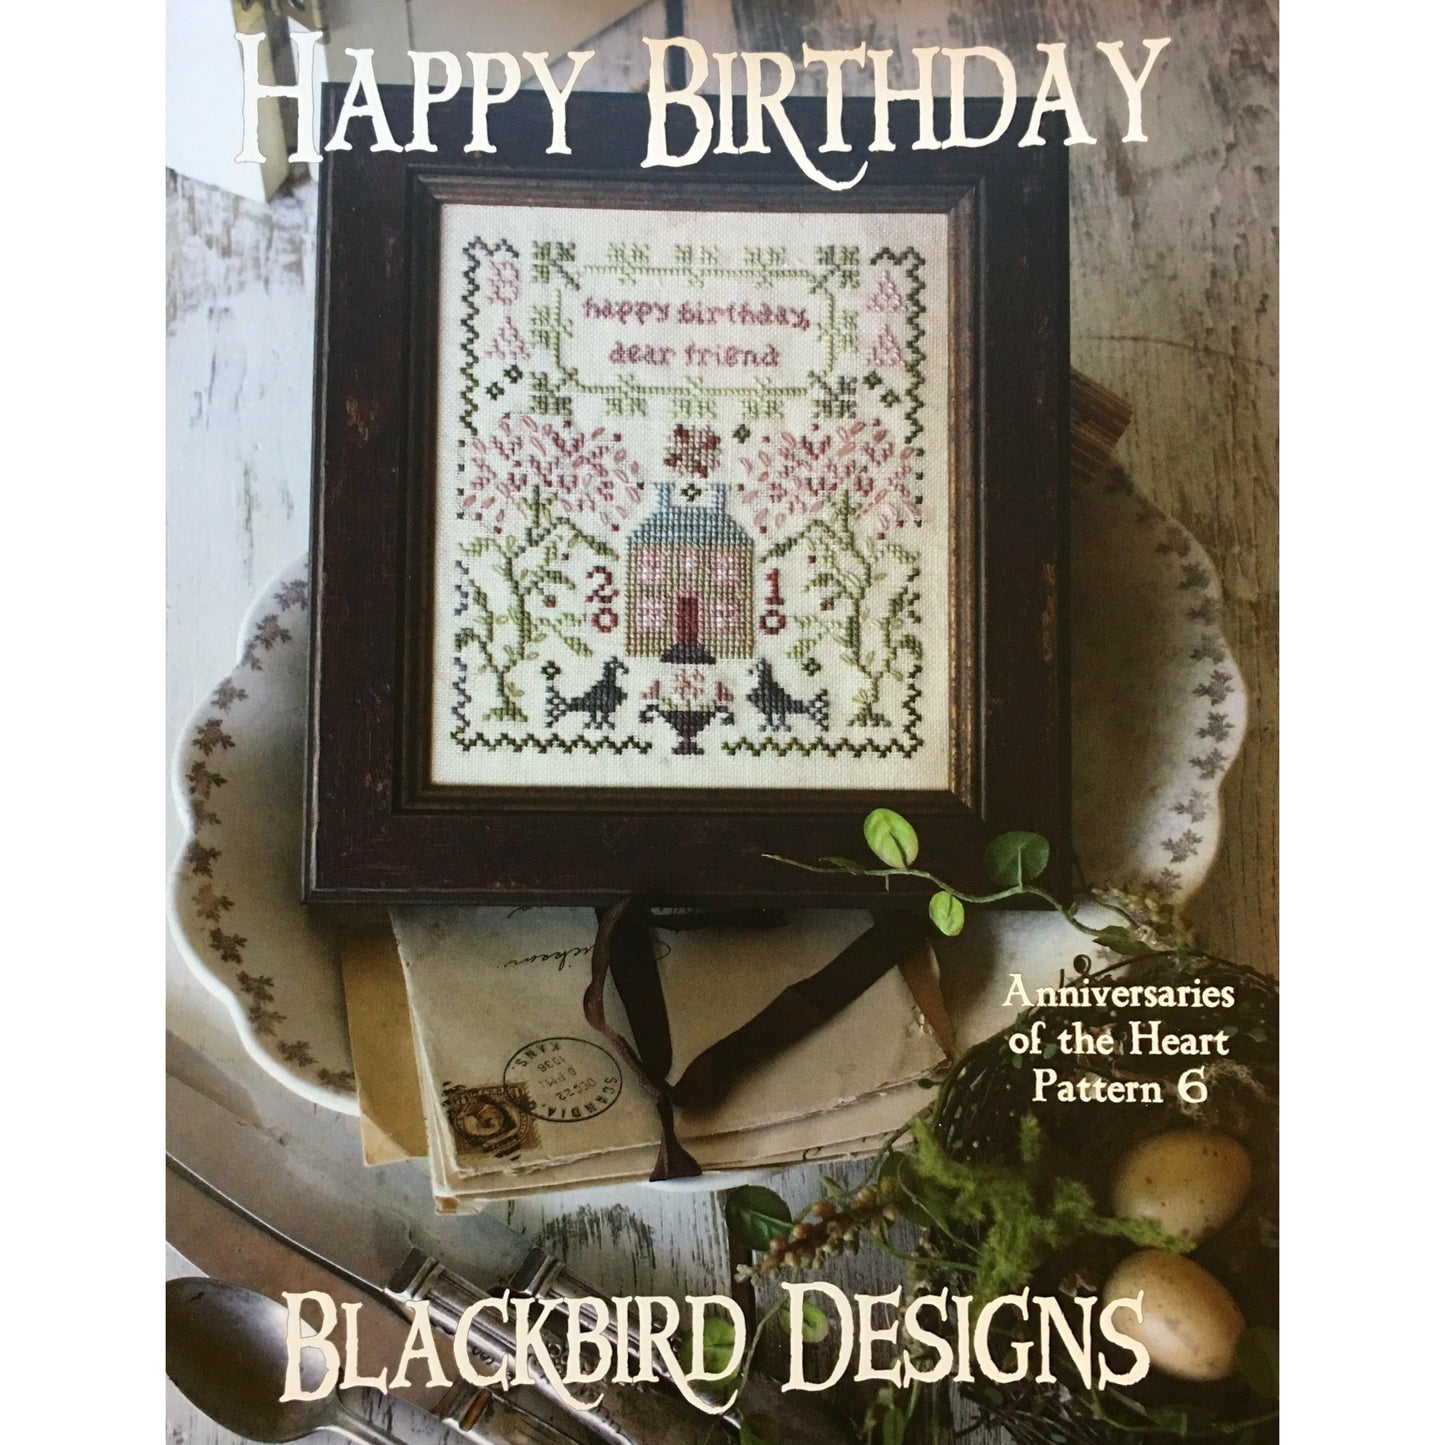 Blackbird Designs ~ Anniversaries of the Heart Pattern 6 - Happy Birthday